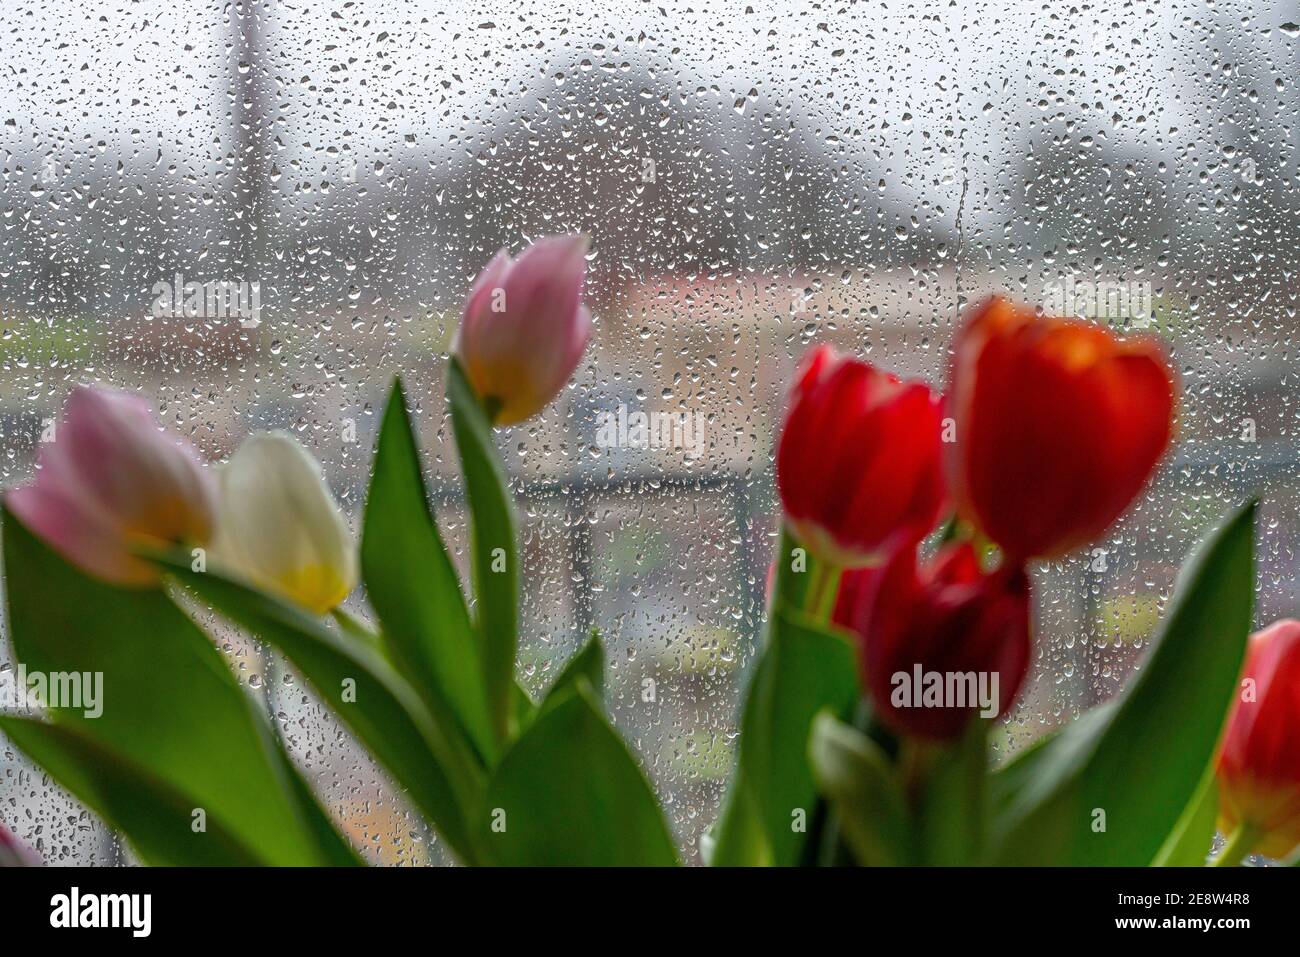 Regnerisches Wetter, Regentropfen auf einer Fensterscheibe, Blick aus einem regnerischen Fenster, Blumenvase mit bunten Tulpen, Stockfoto